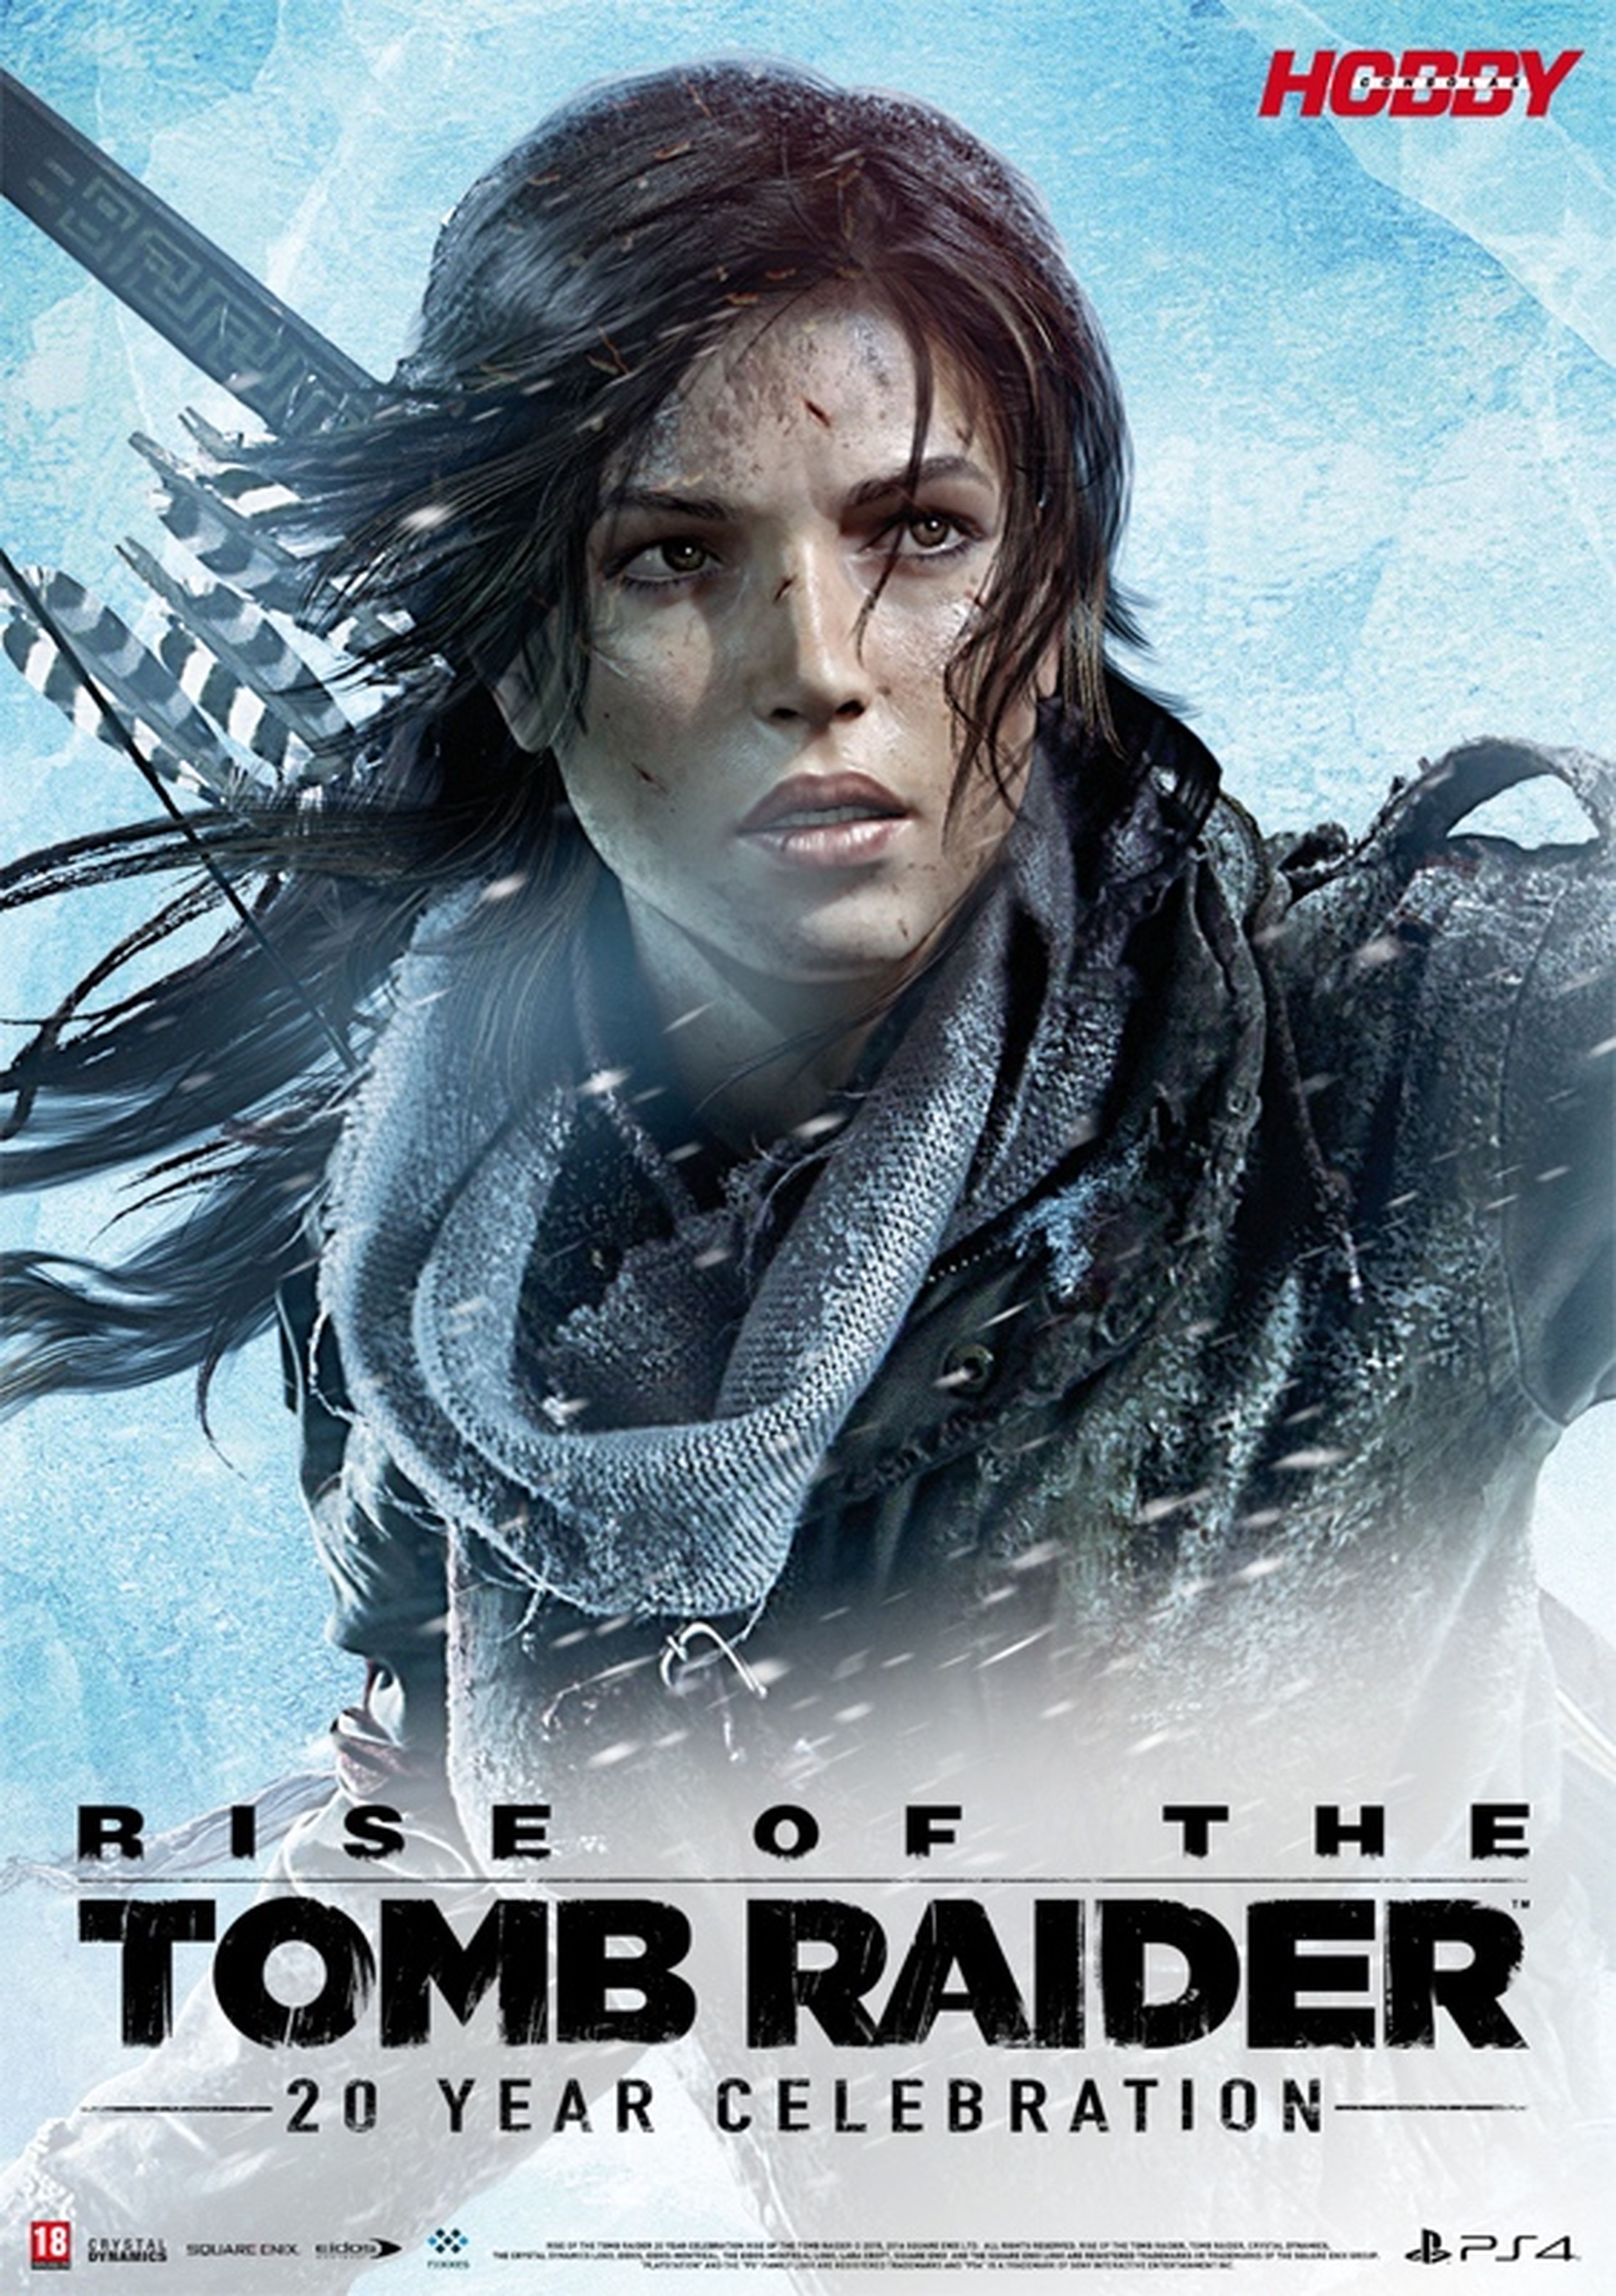 El segundo póster está dedicado a Lara Croft y la edición 20 aniversario de su última aventura, Rise of the Tomb Raider